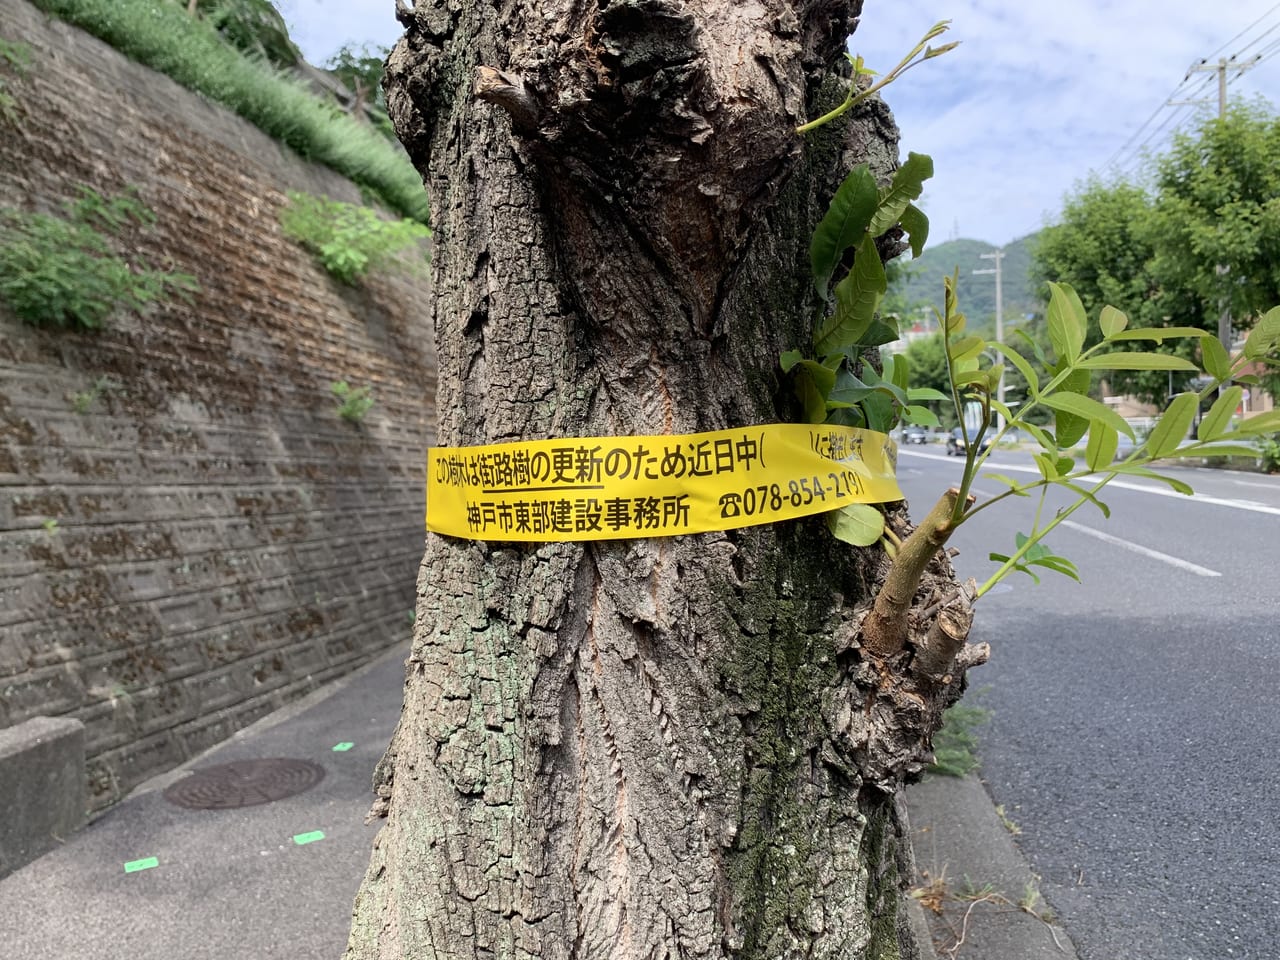 神戸市街路樹更新